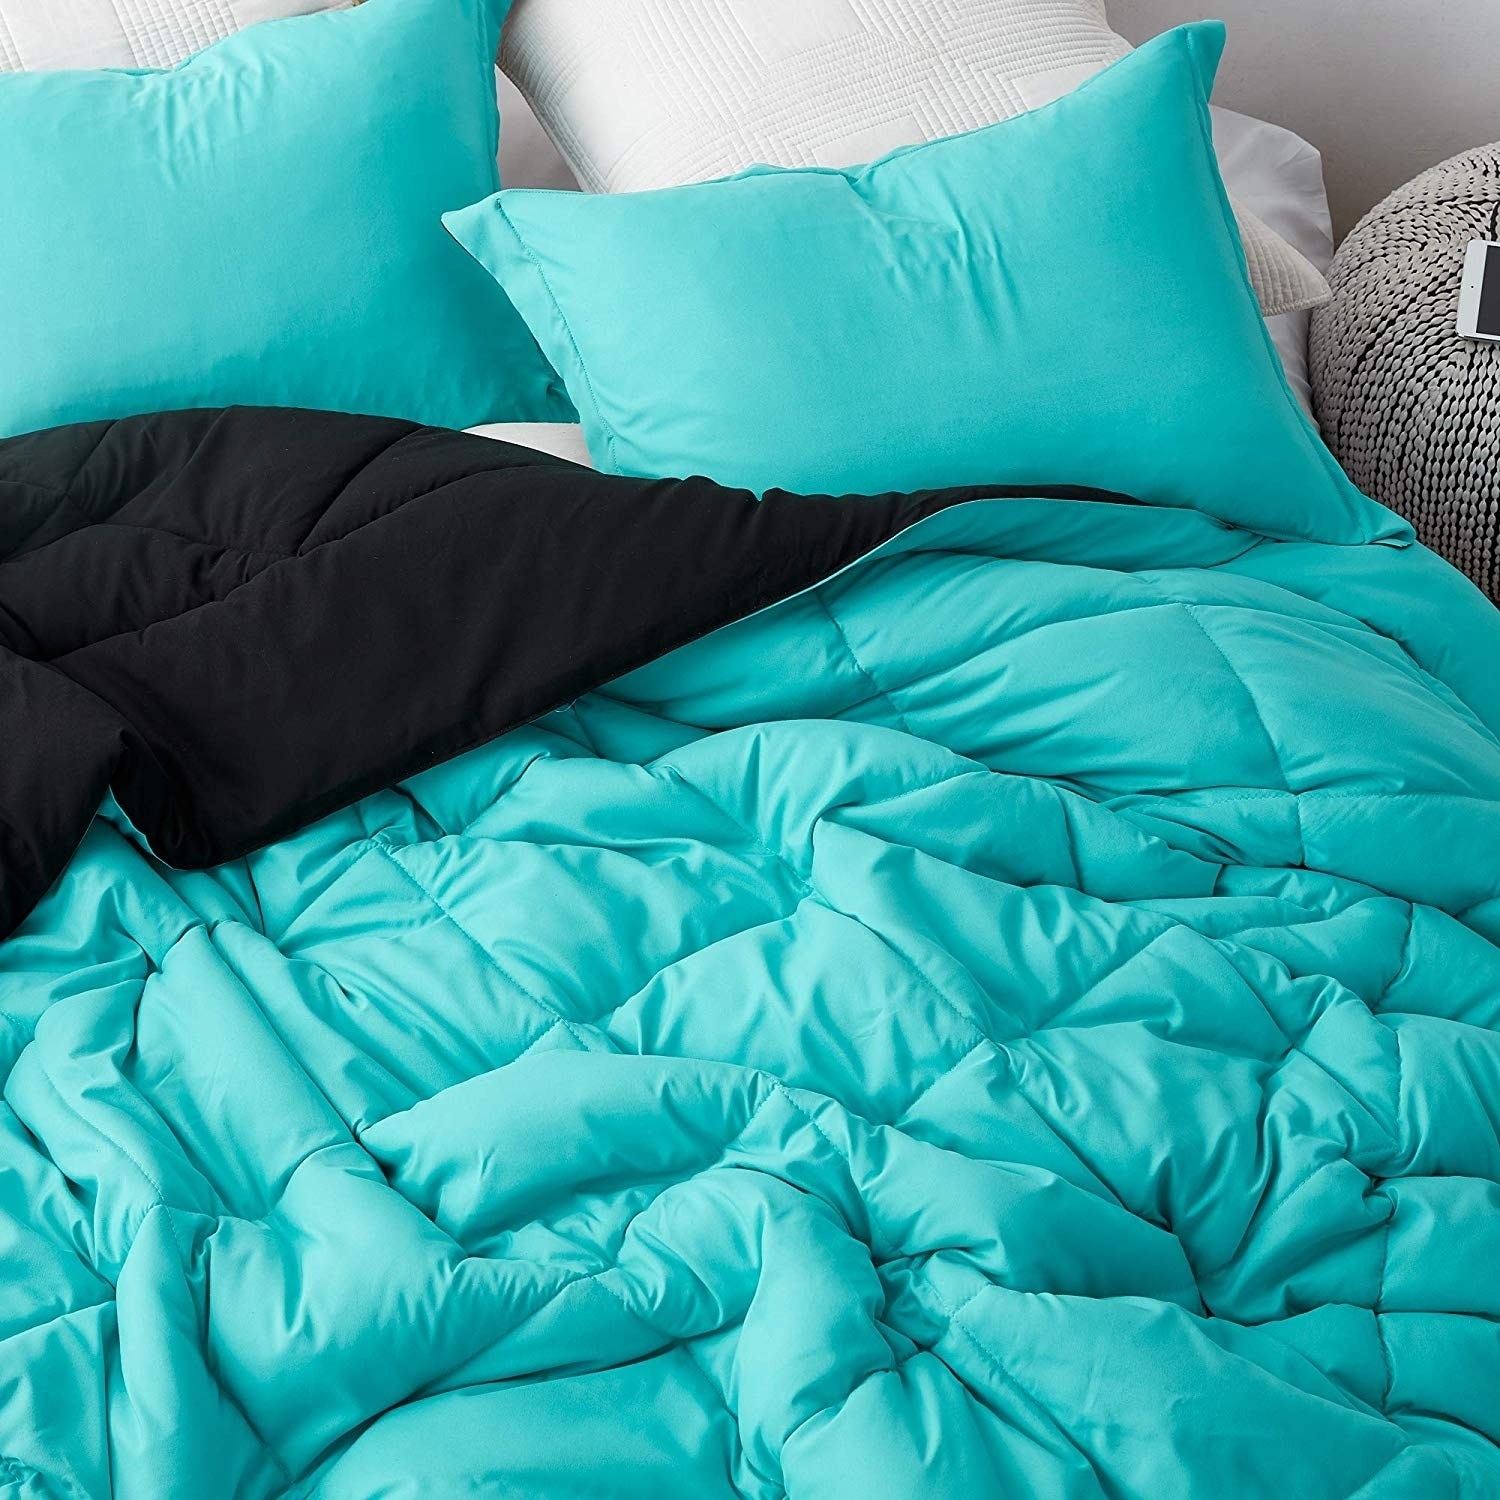 Aqua Black Reversible Full Comforter Oversized Full Xl Bedding On Sale Overstock 28434222